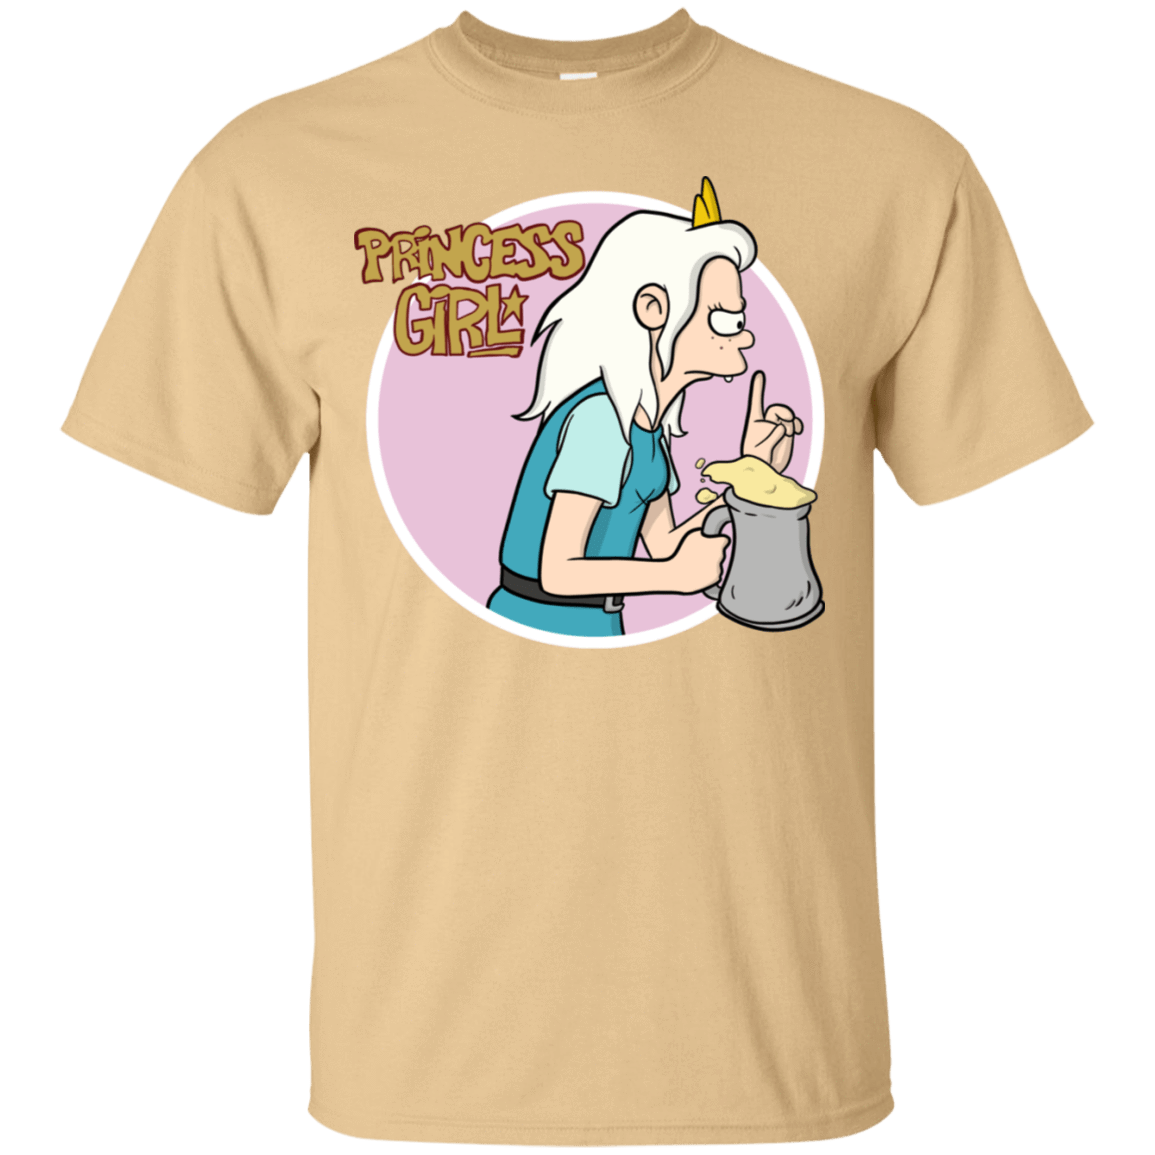 T-Shirts Vegas Gold / S Princess Girl T-Shirt